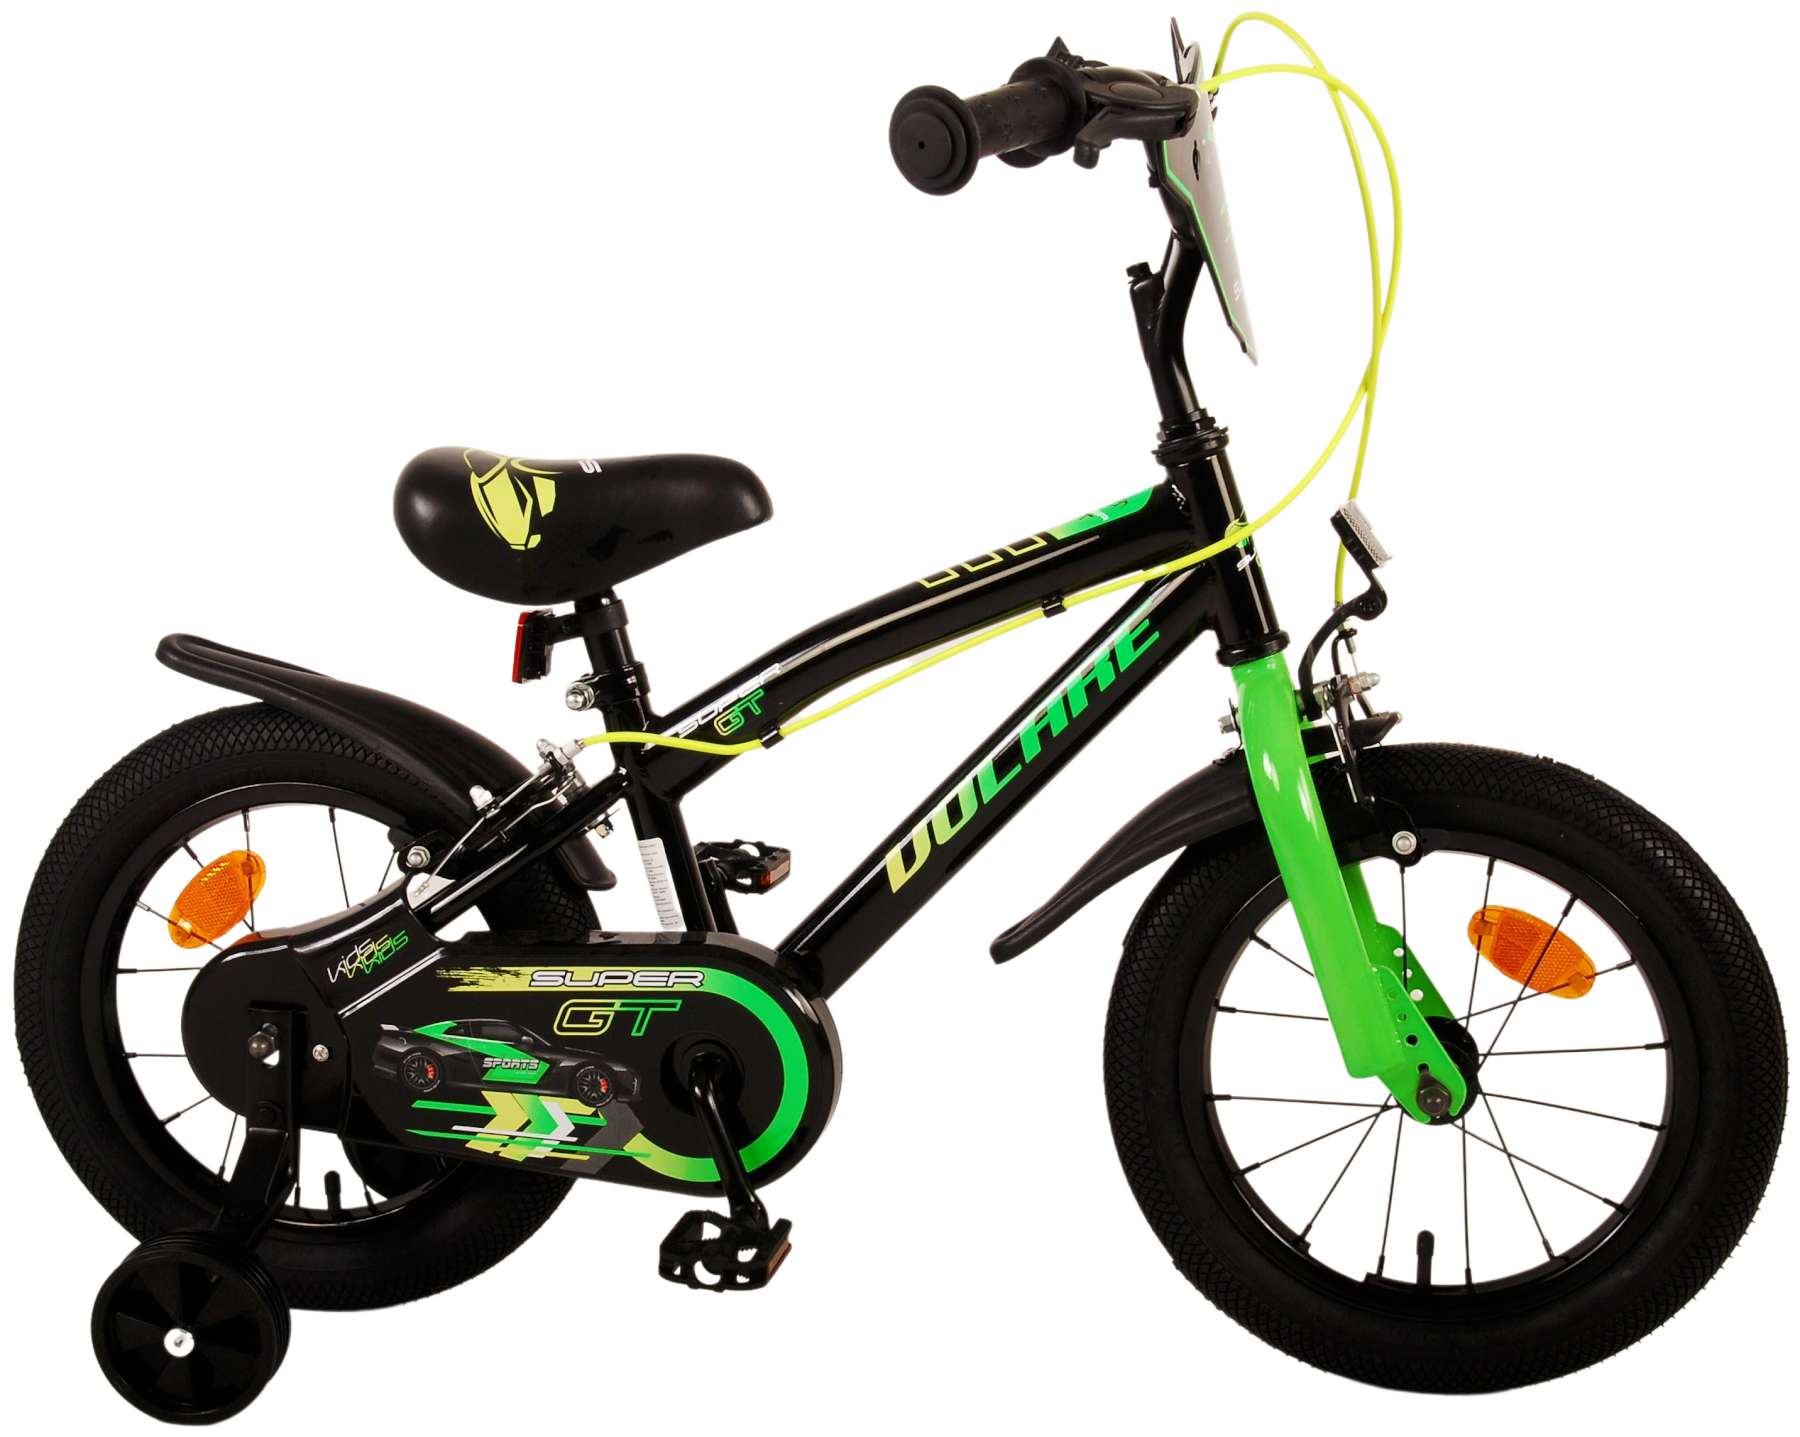 Kinderfahrrad Super GT für Jungen 14 Zoll Kinderrad in Grün Fahrrad